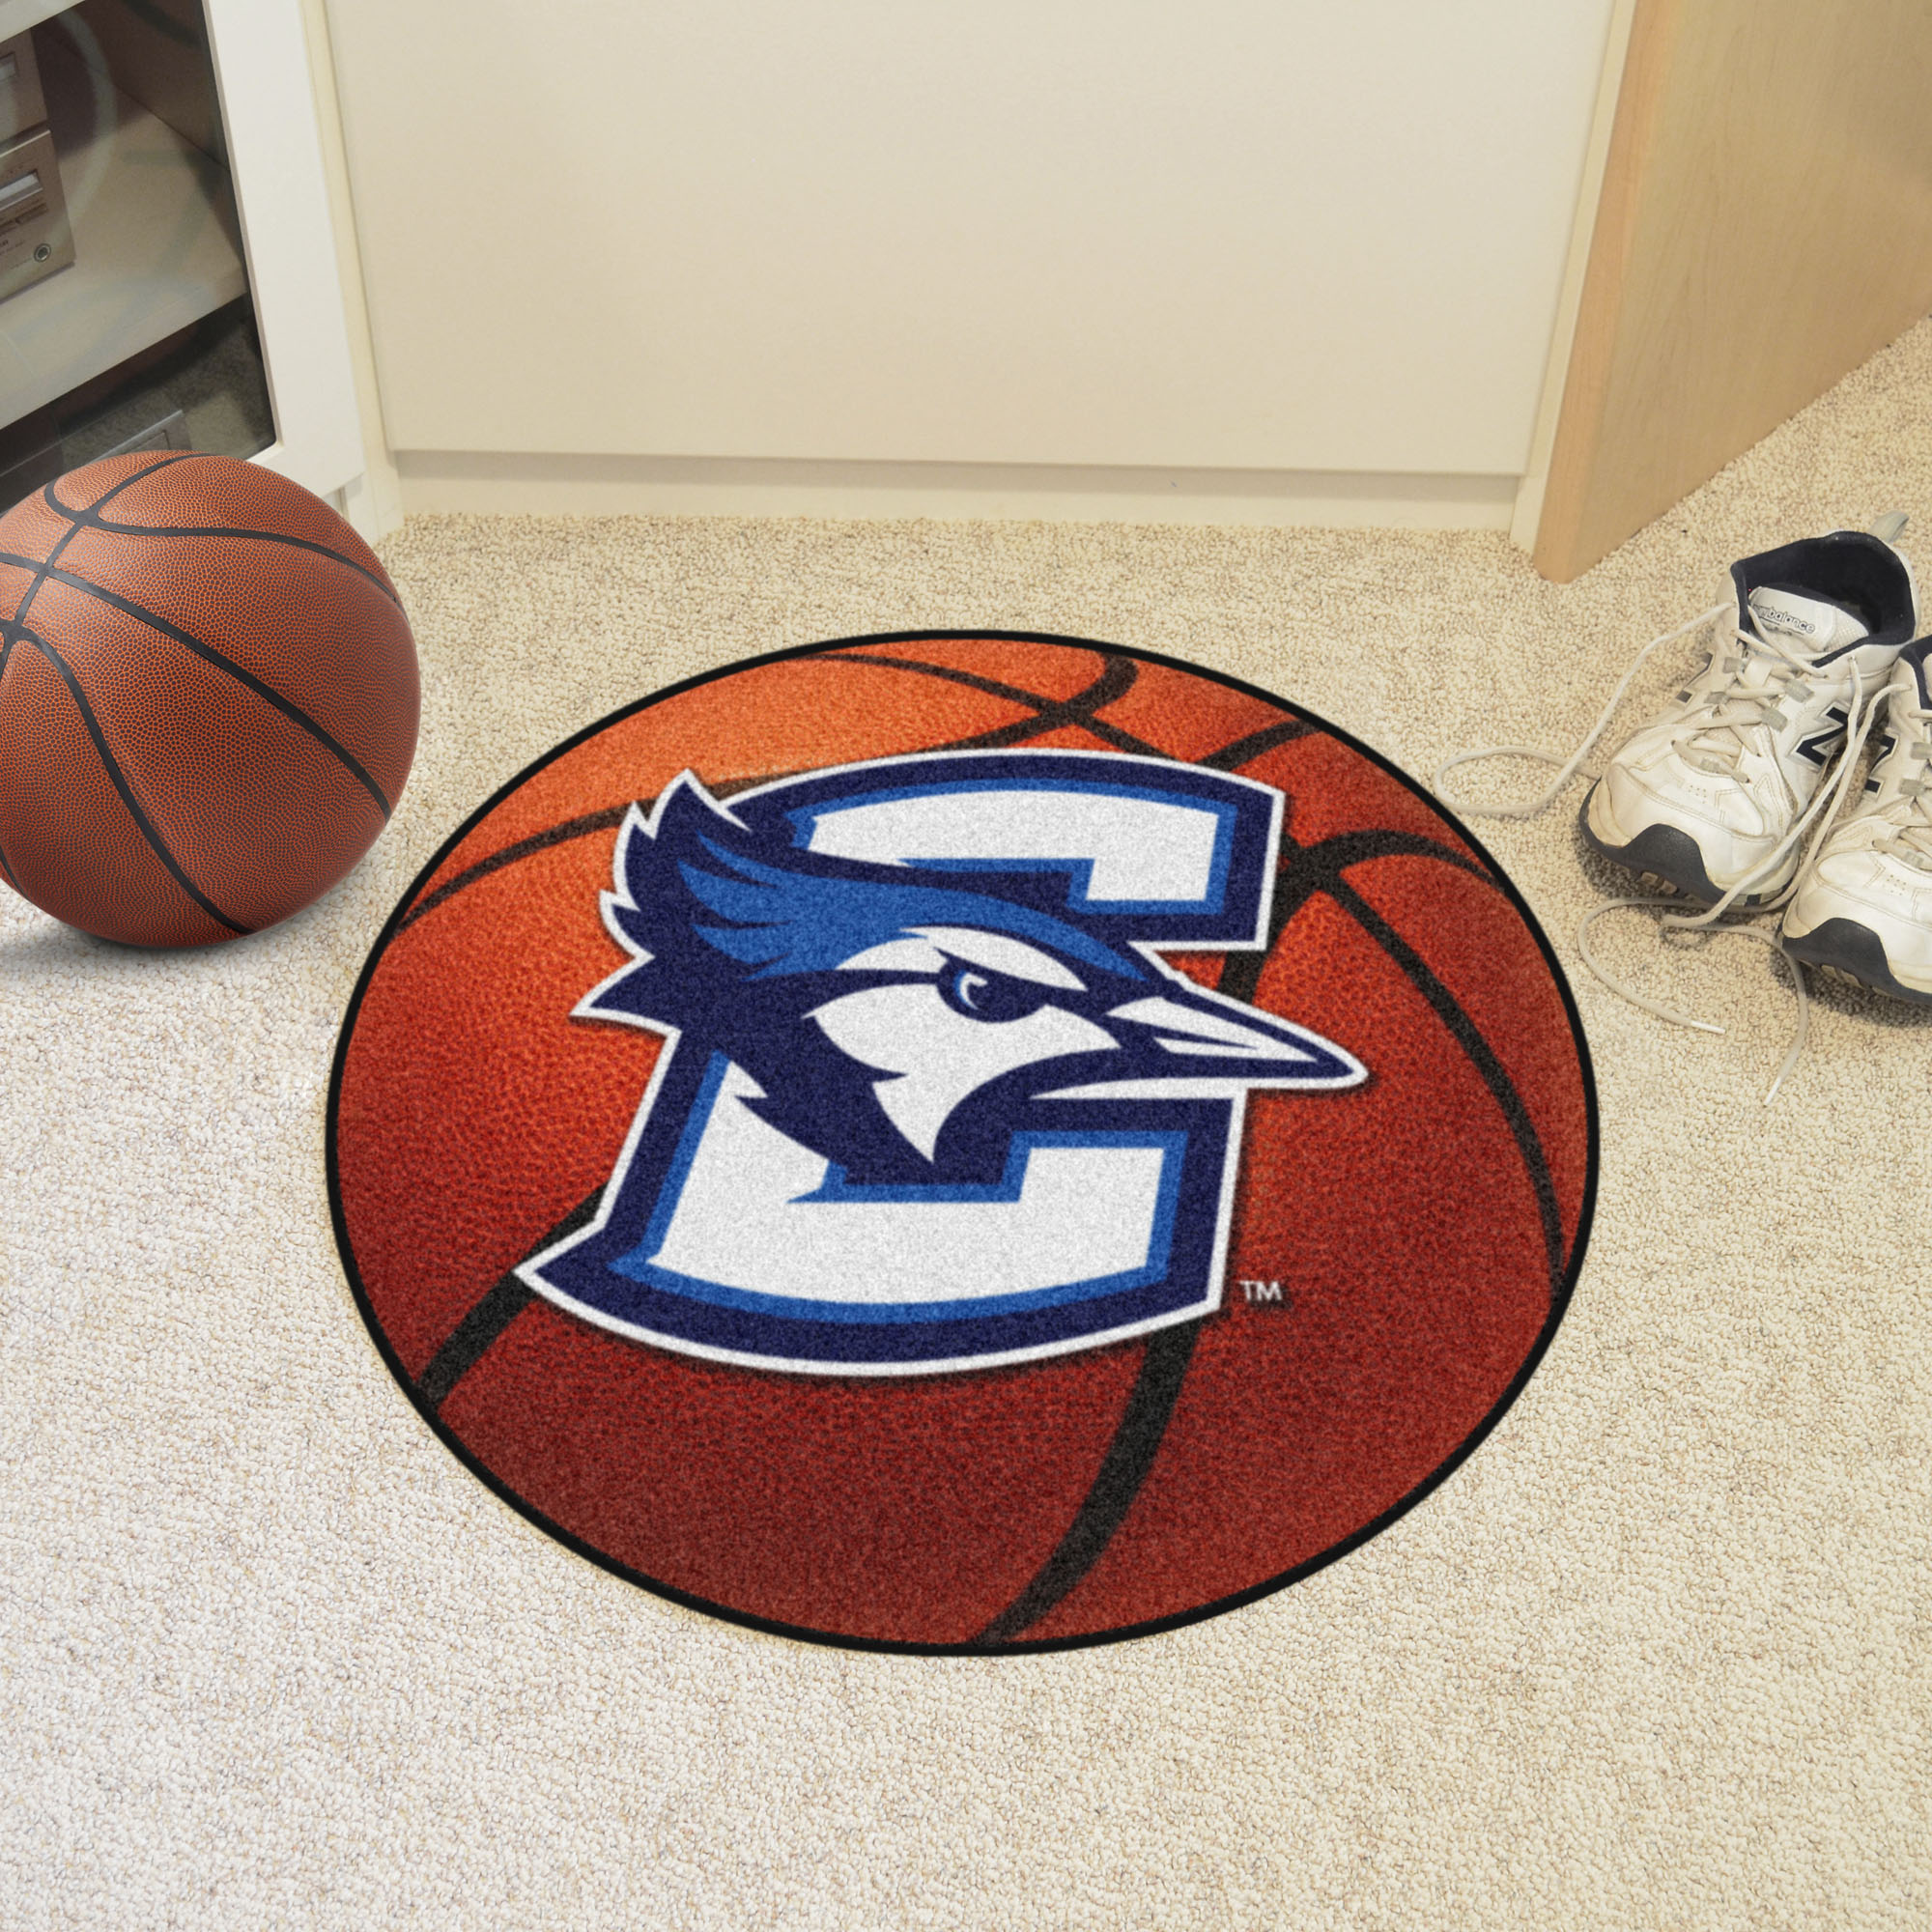 Creighton University Area Rugs - Nylon Ball Shaped (Ball Shaped Area Rugs: Basketball)